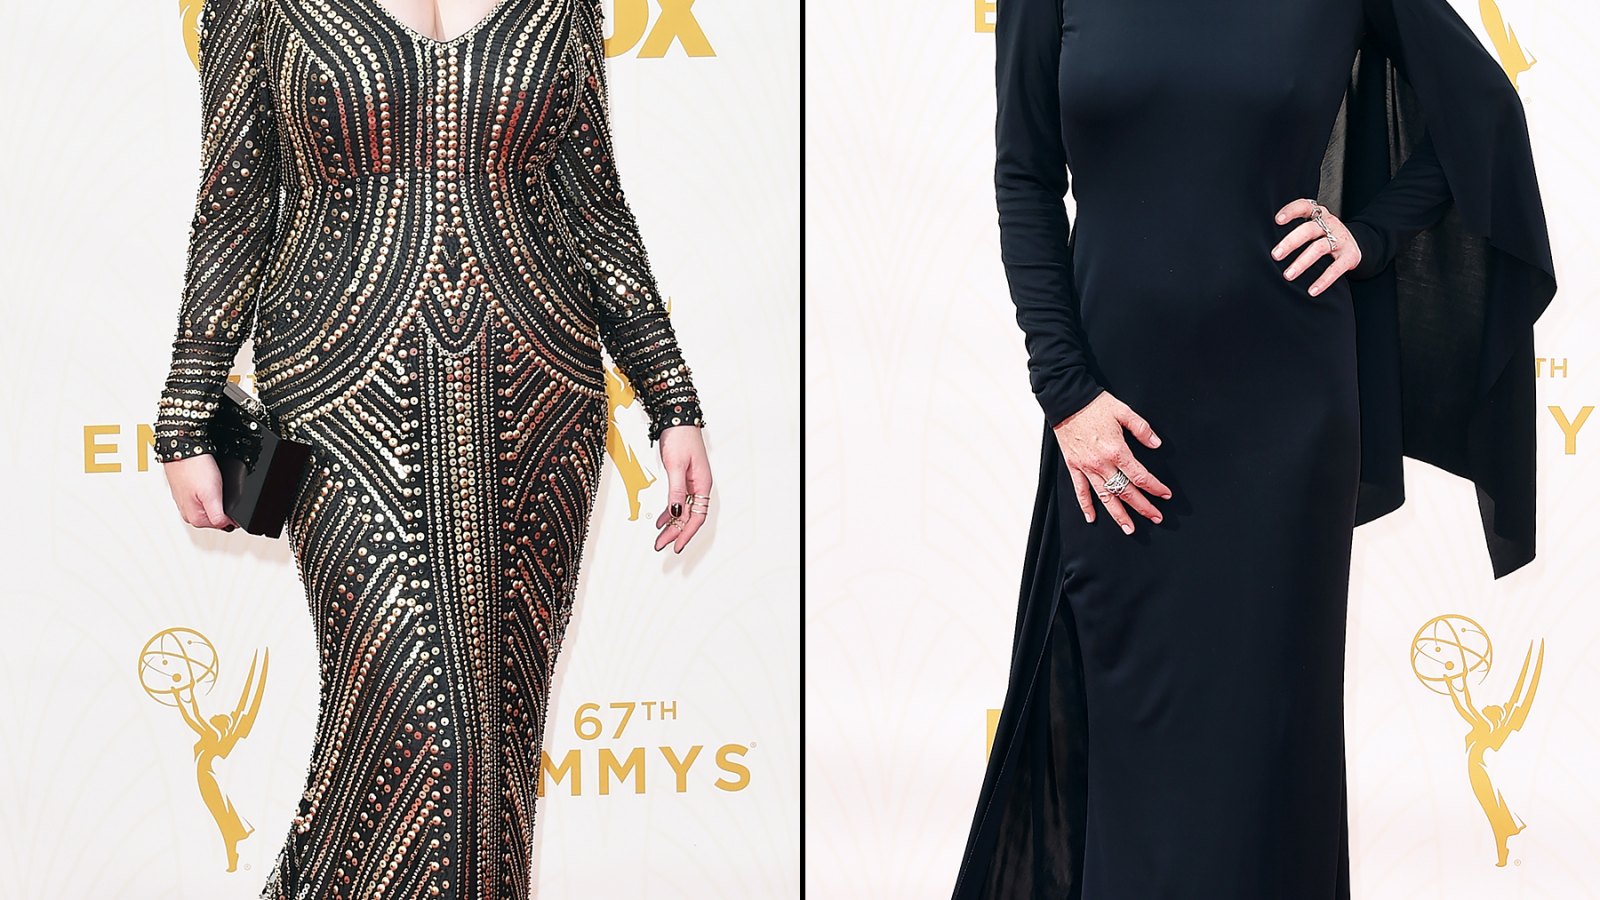 Christina Hendricks at the Emmys on September 20, 2015